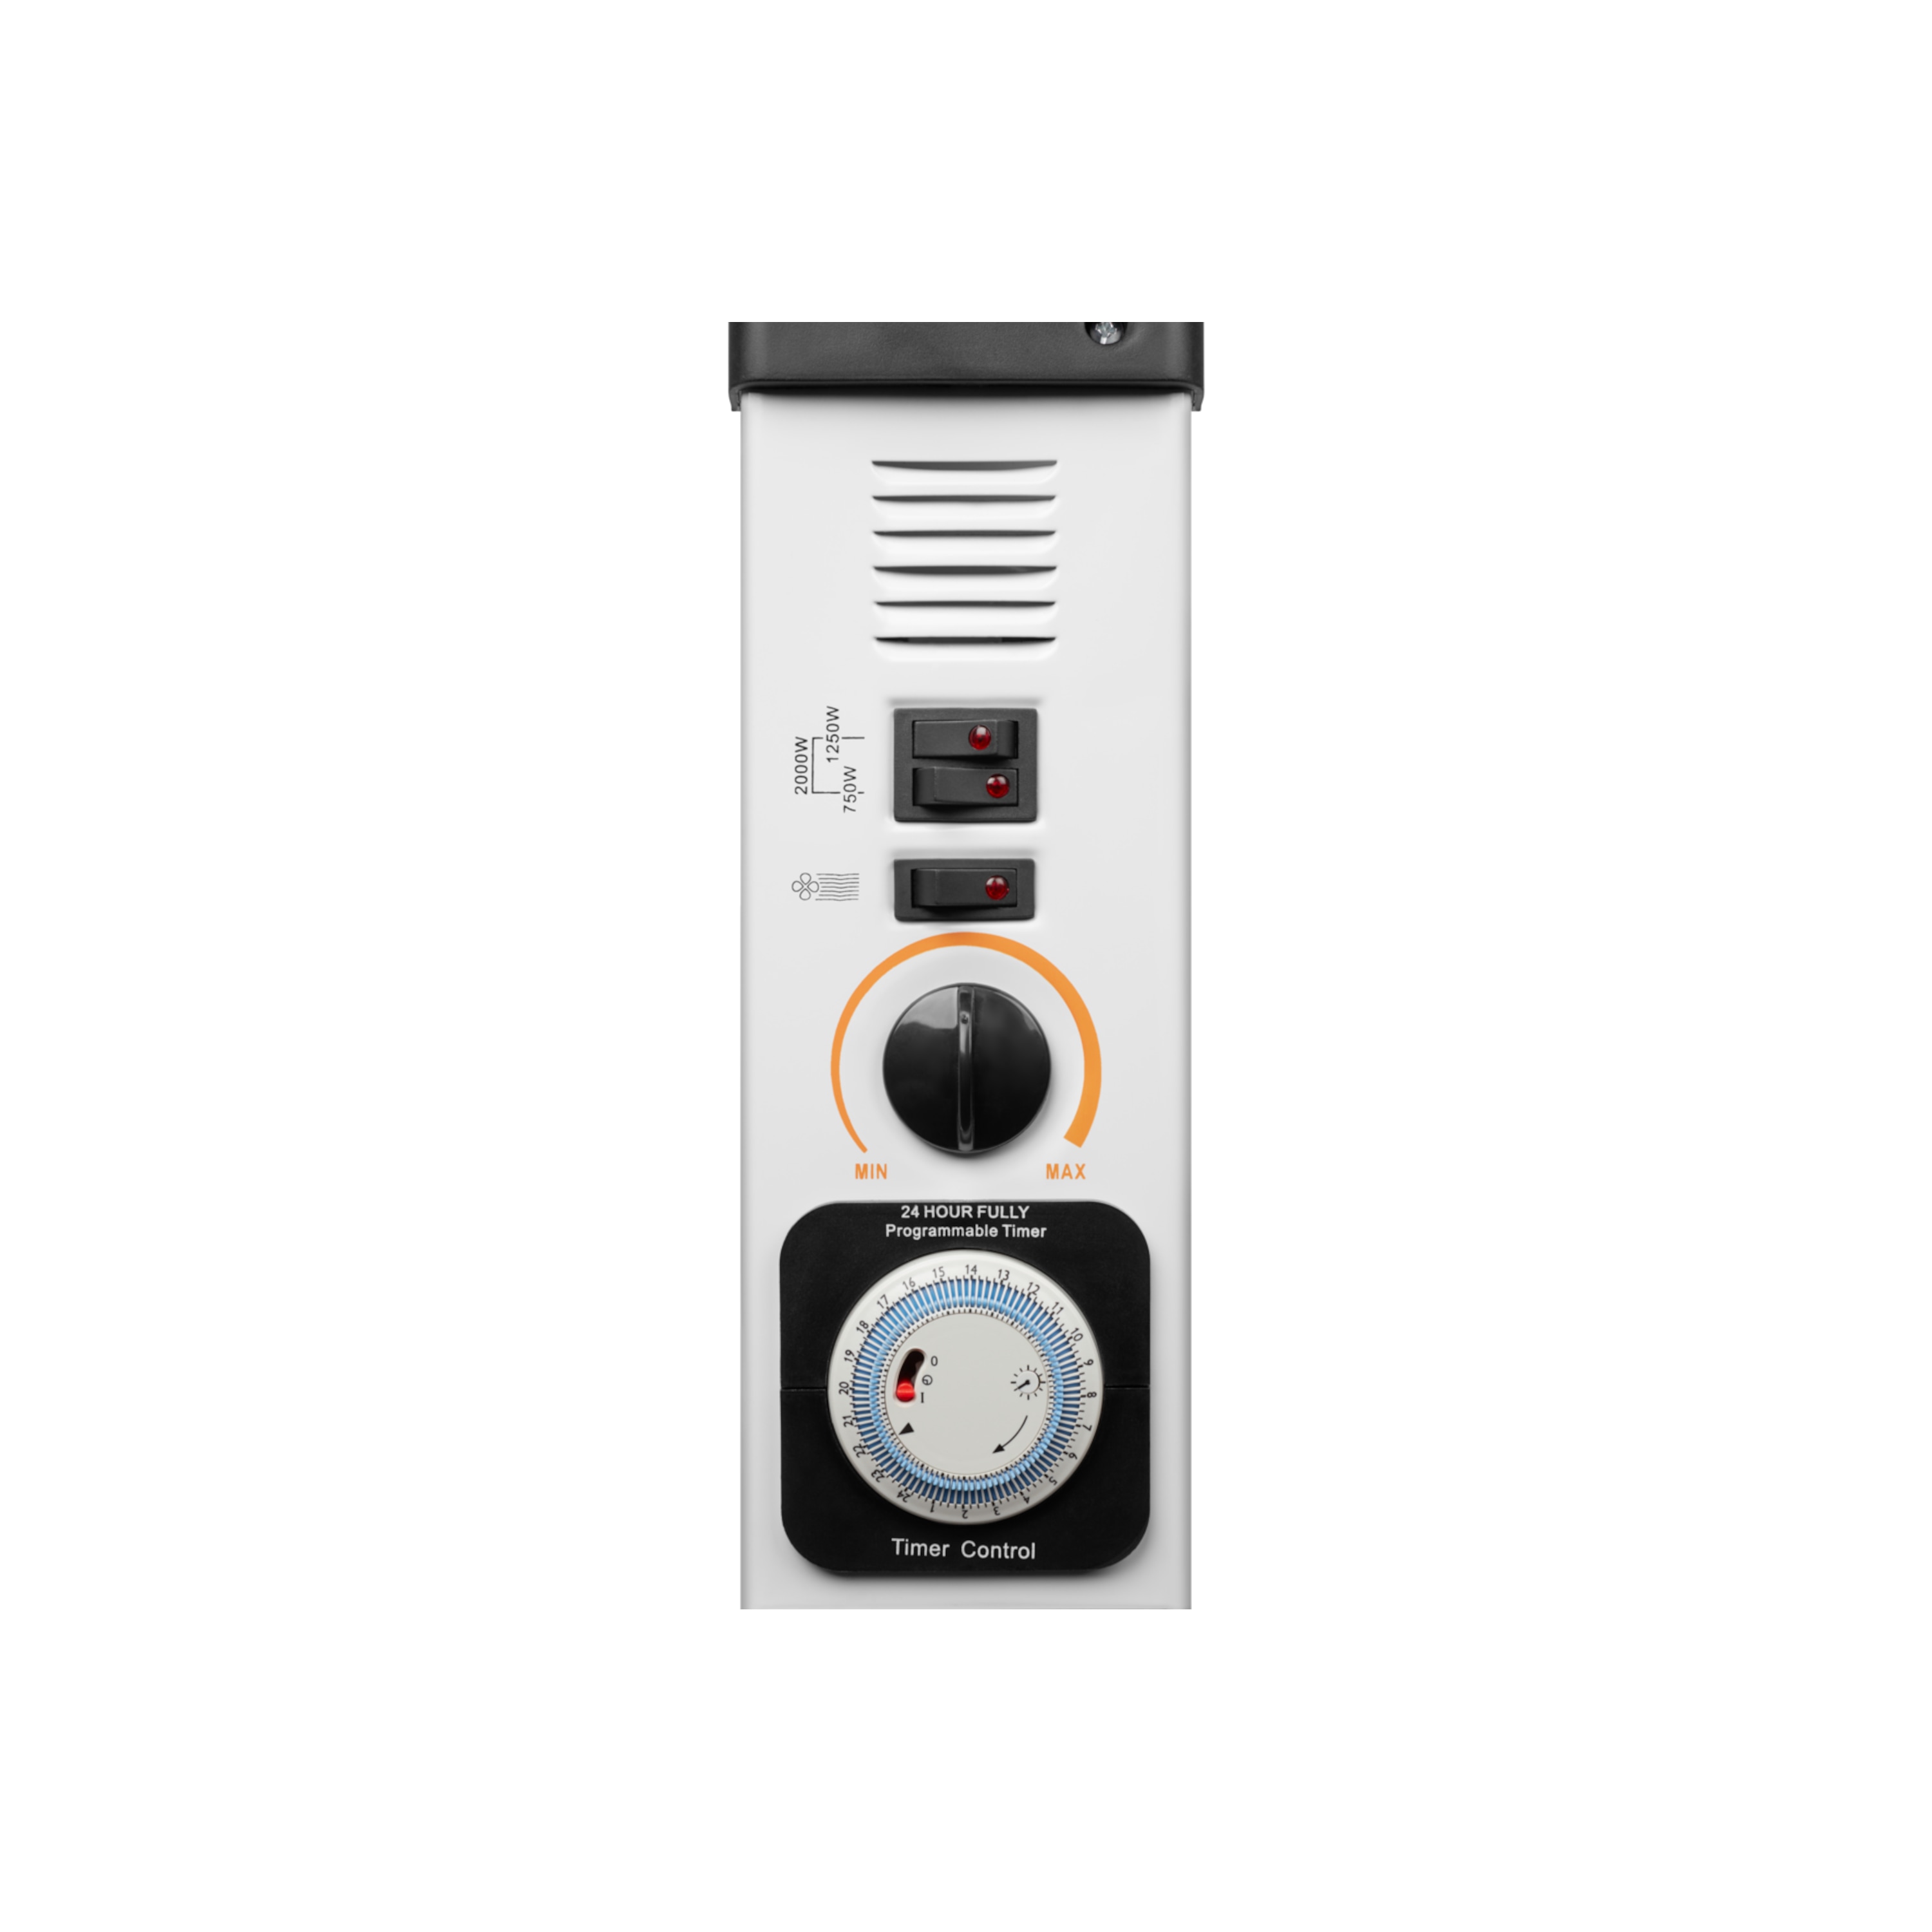 MEDION® Konvektor-Heizung MD 17900, 2000W Leistung, 3 Heizstufen, 24 Stunden Timer, einstellbares Thermostat